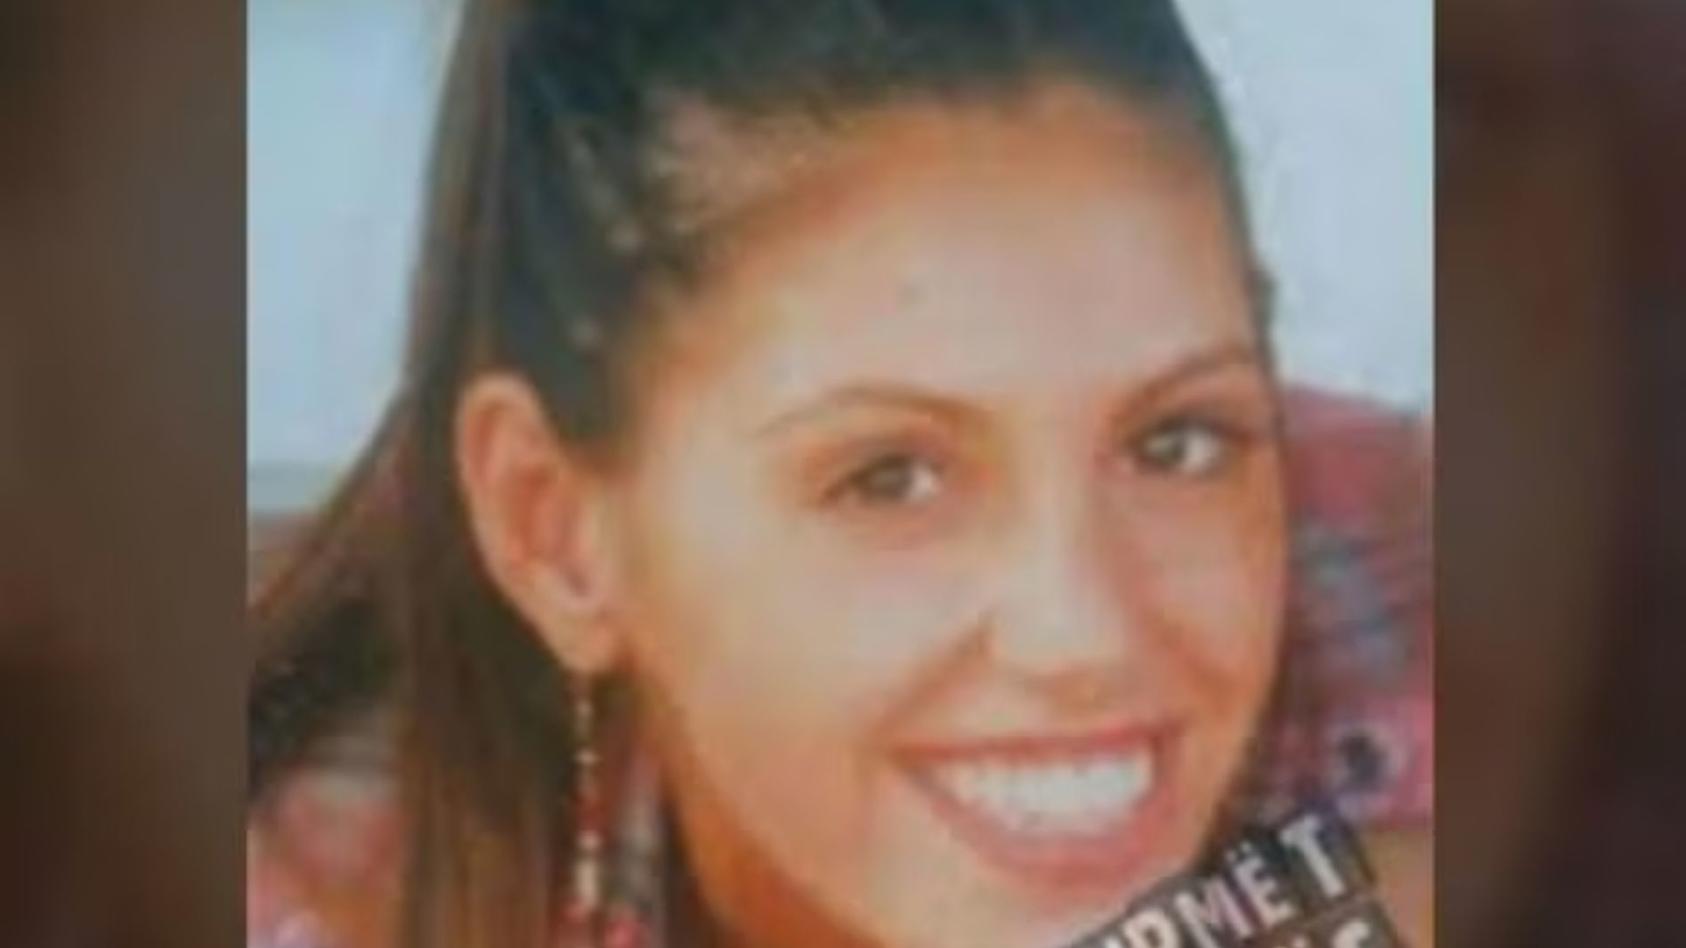 Wanita hilang (22 tahun) ditemukan tewas setelah sembilan tahun – tubuh seorang teman dengan dinding di sebuah apartemen